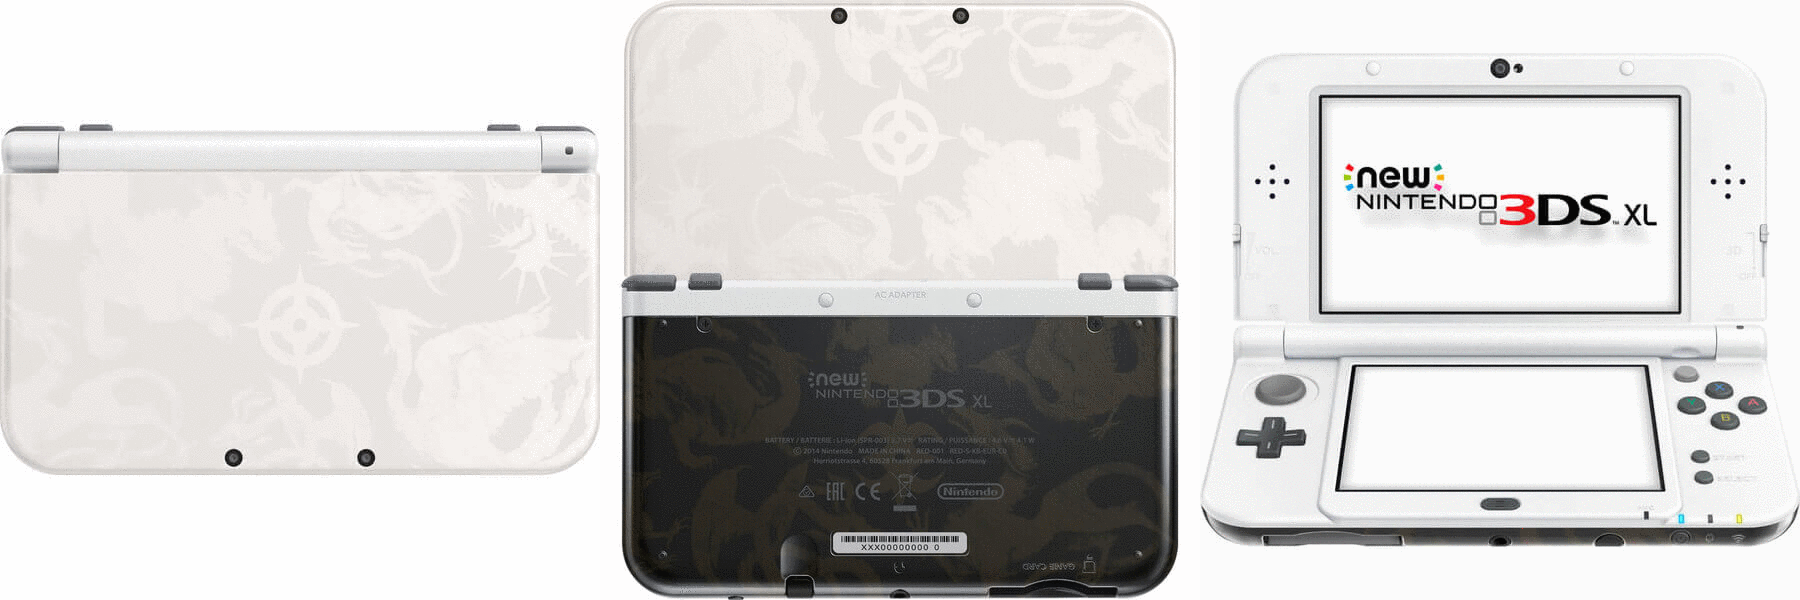 Nintendo 3DS Fire Emblem Fates Special Edition